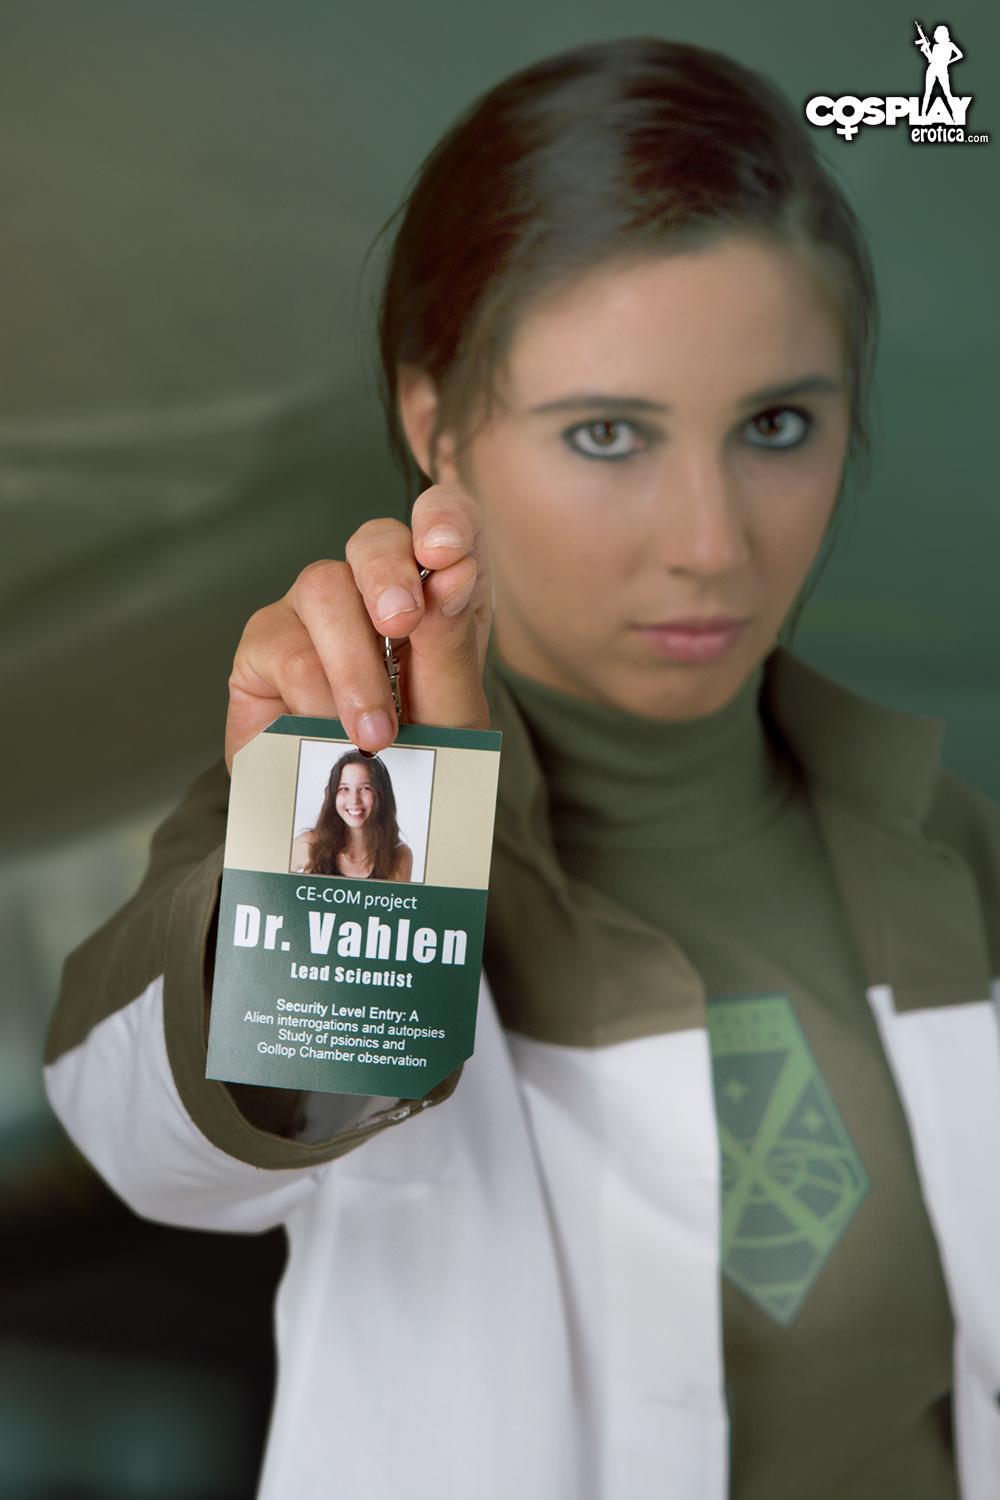 La belle cosplayeuse Stacy se déguise en Dr. Vahlen de X-Com.
 #60007914